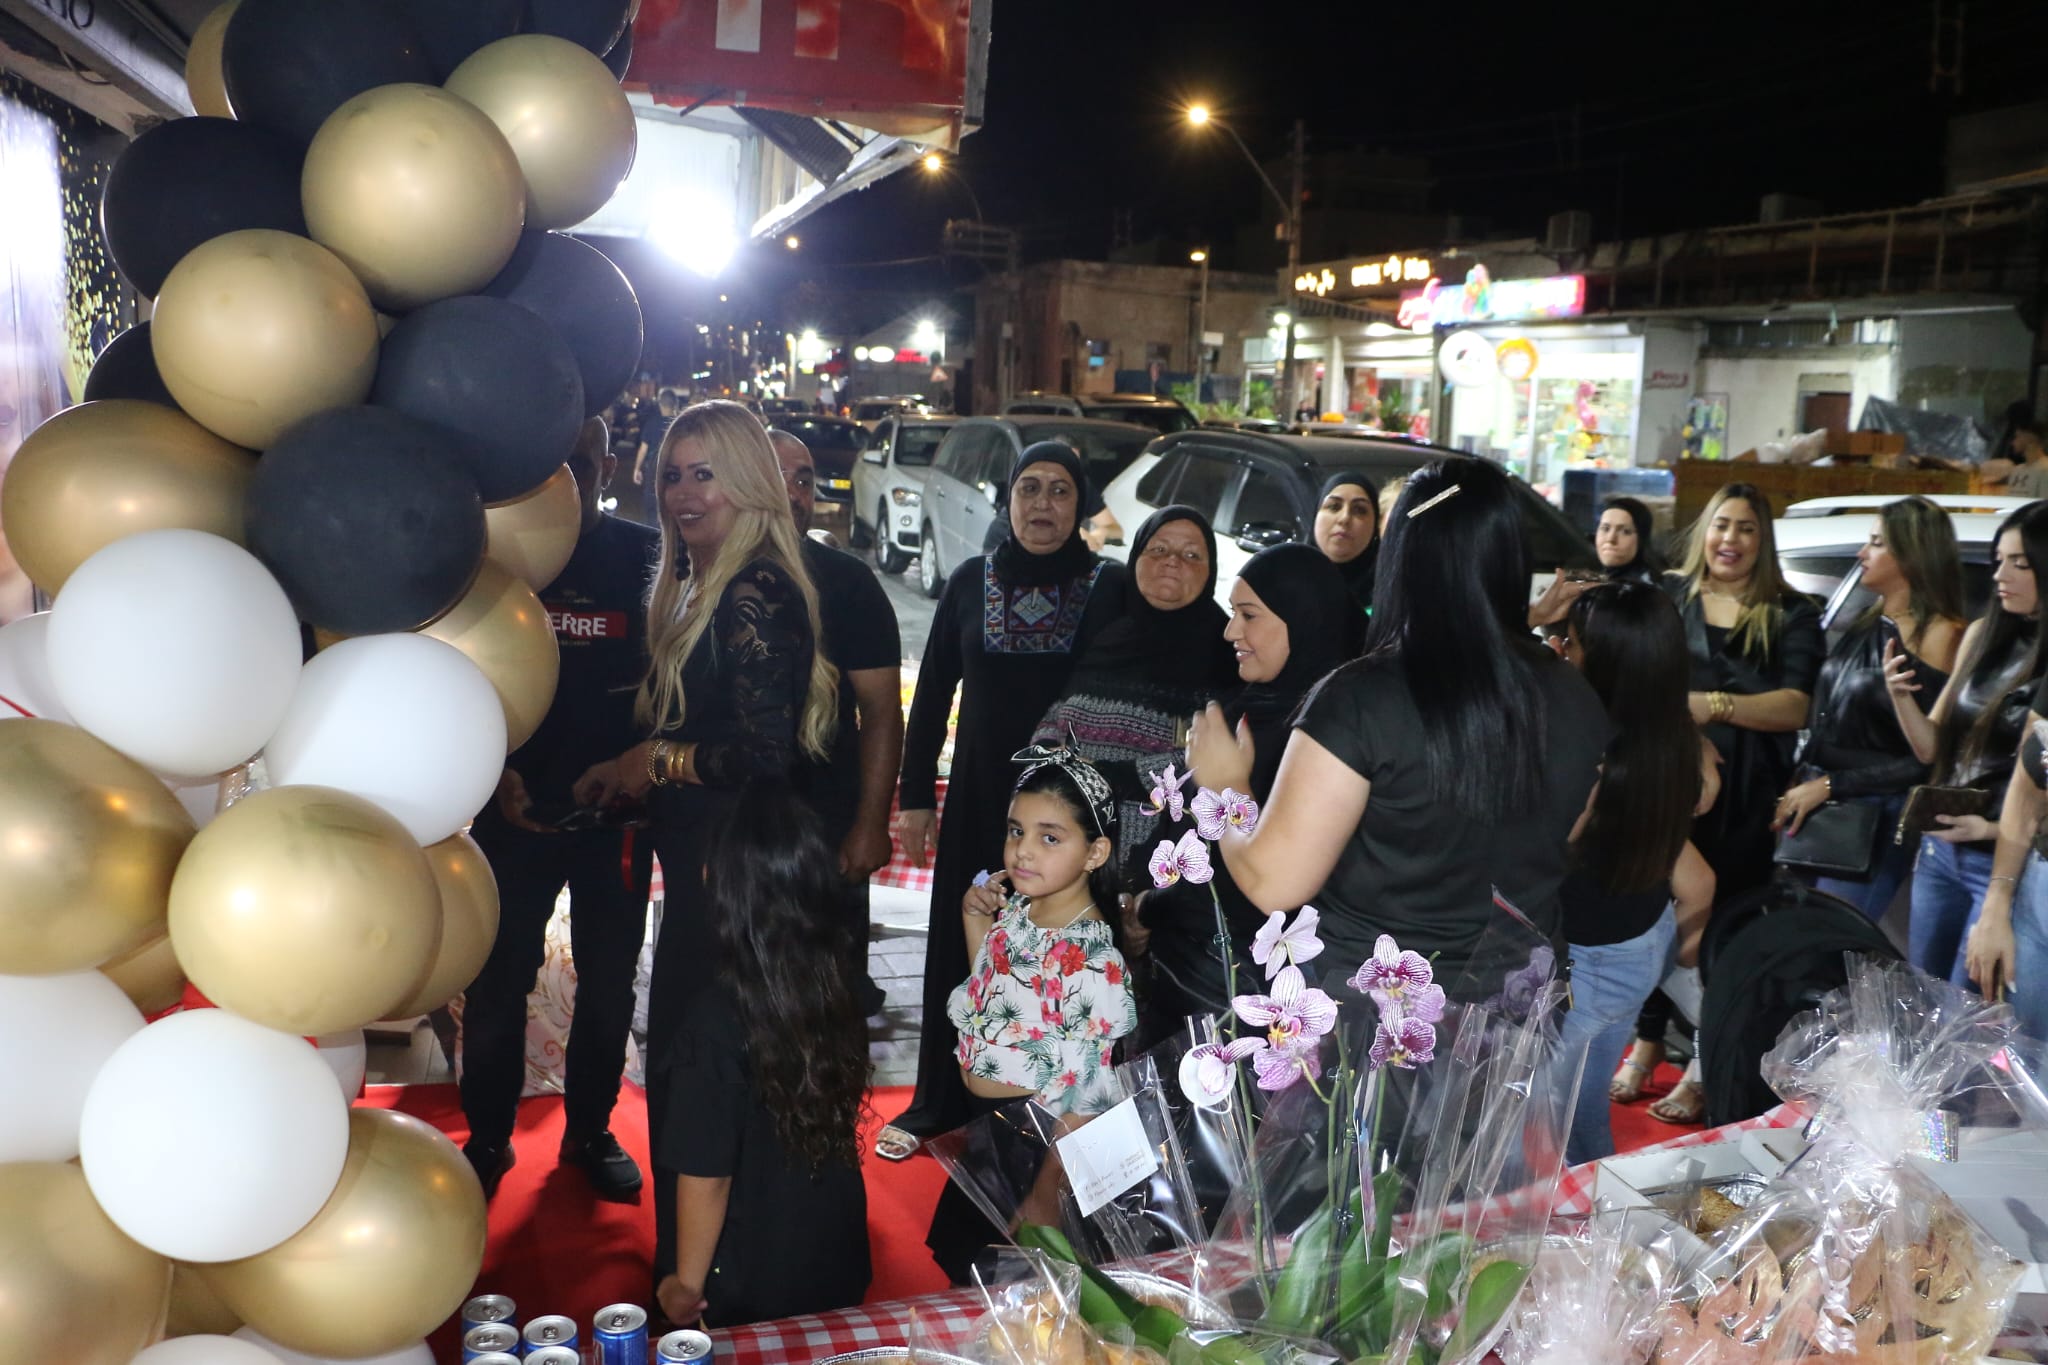 بالصور: افتتاح صالون غادة سموني للنساء في يافا 